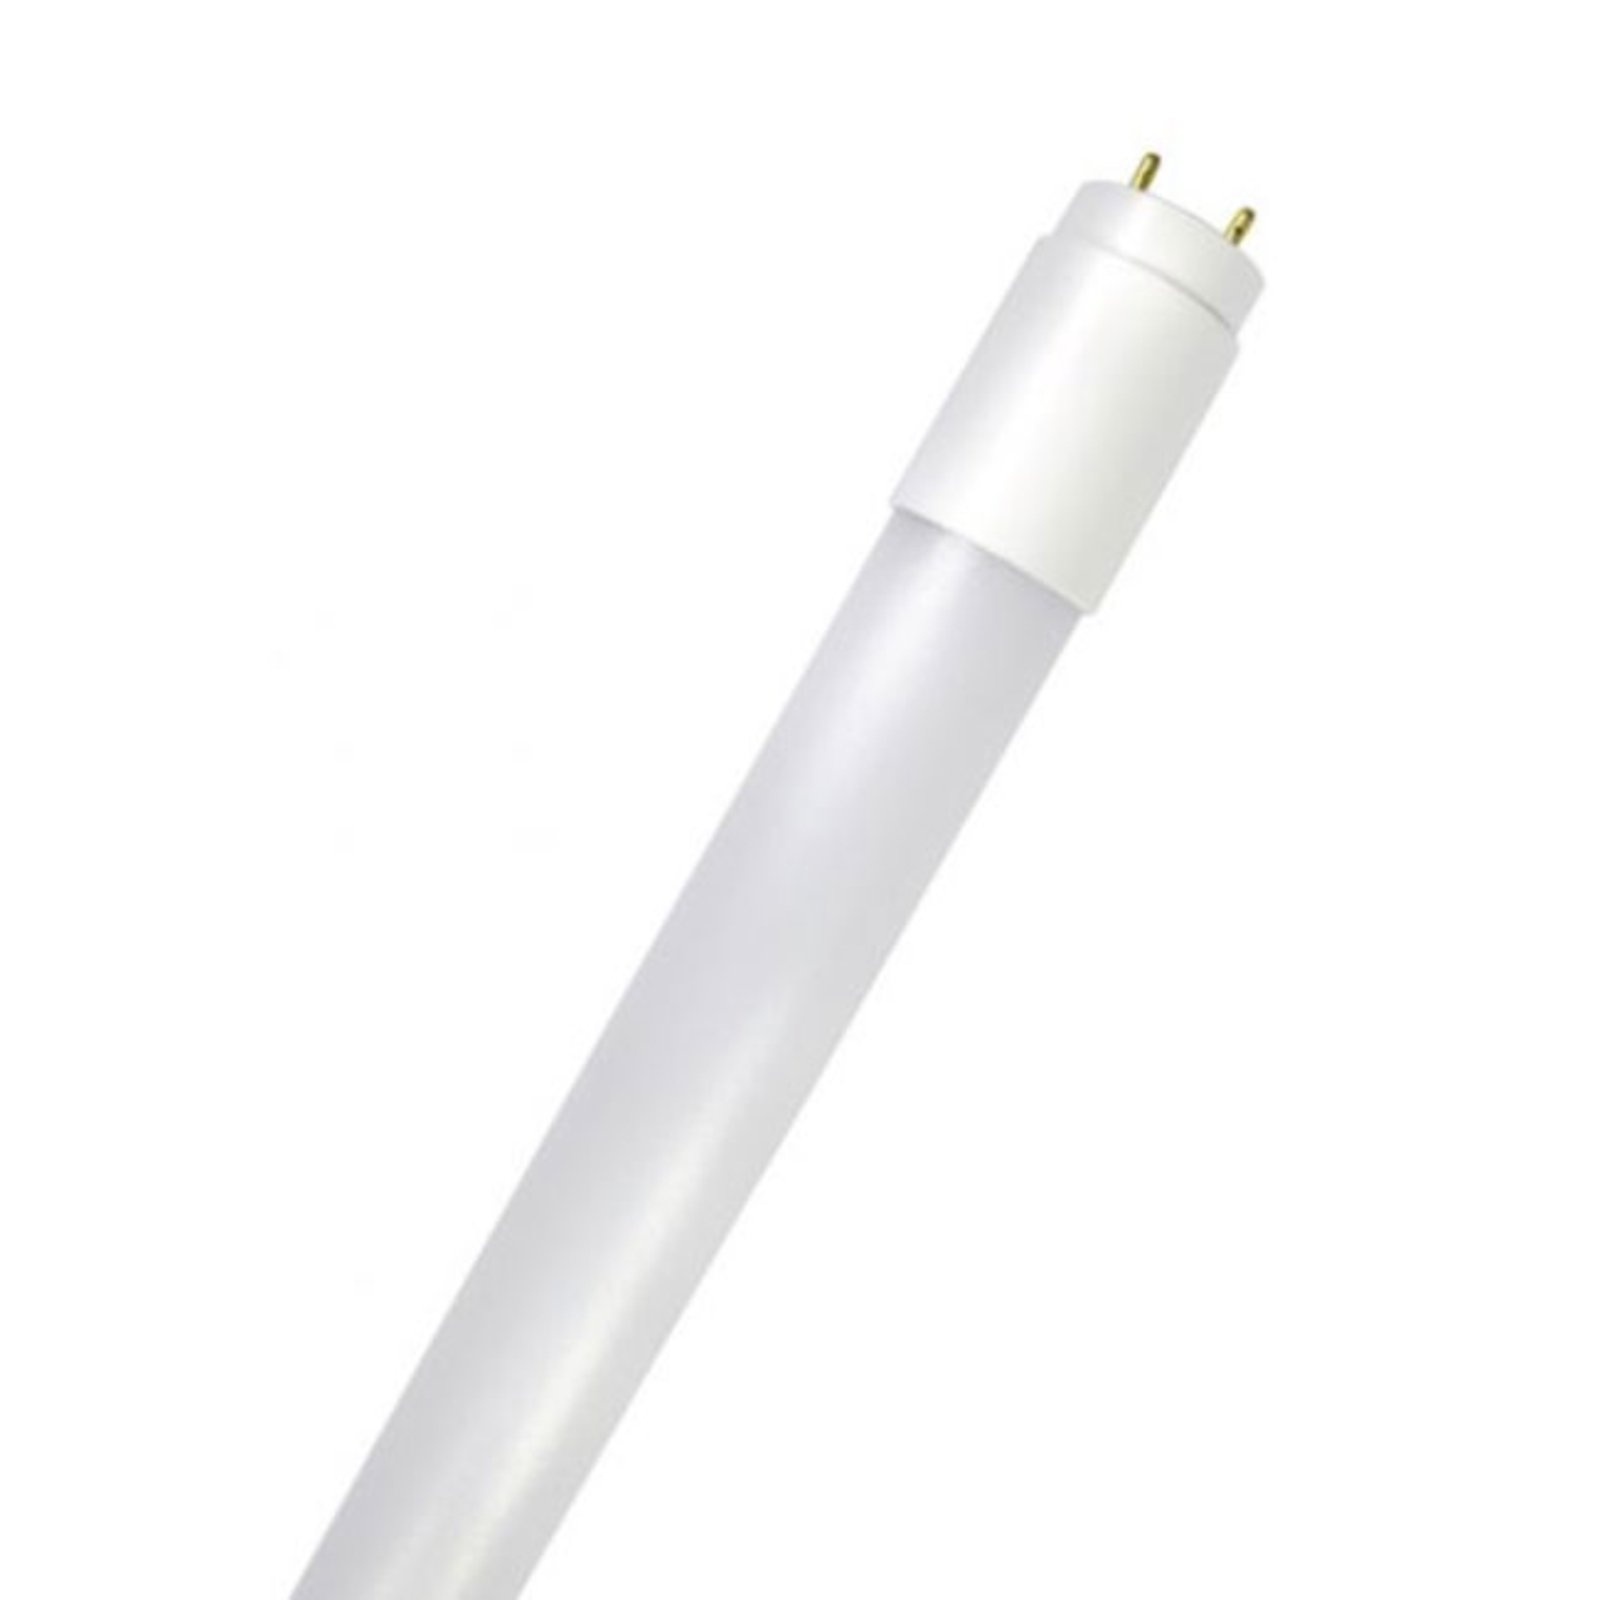 LED tube GoLeaf T8 G13 full spectrum 8 W 60 cm